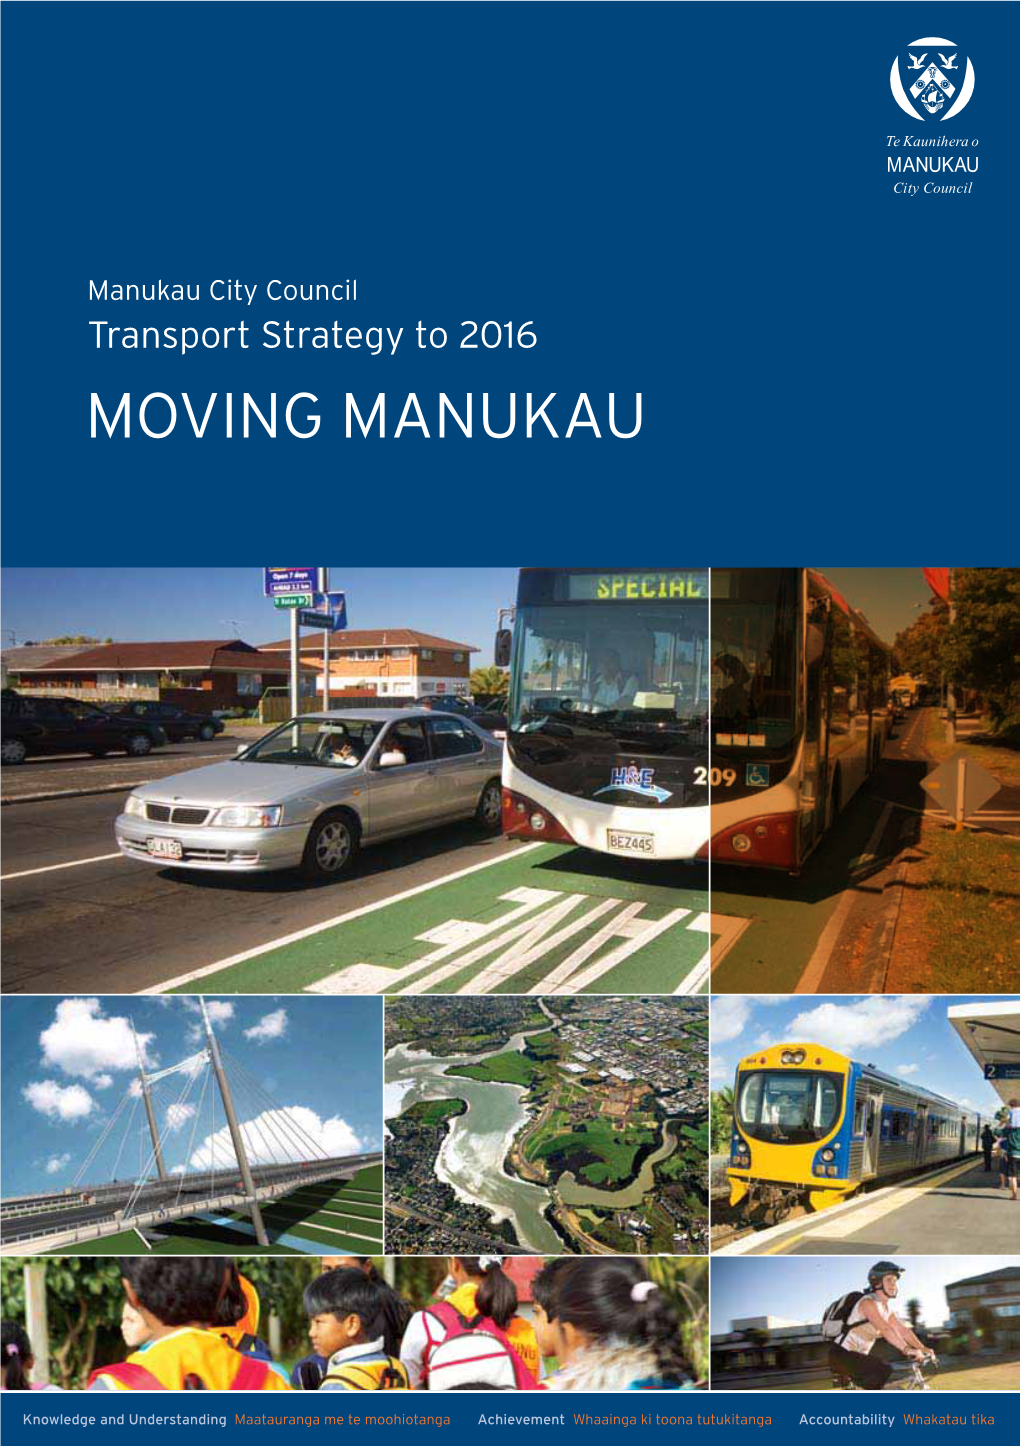 Moving Manukau